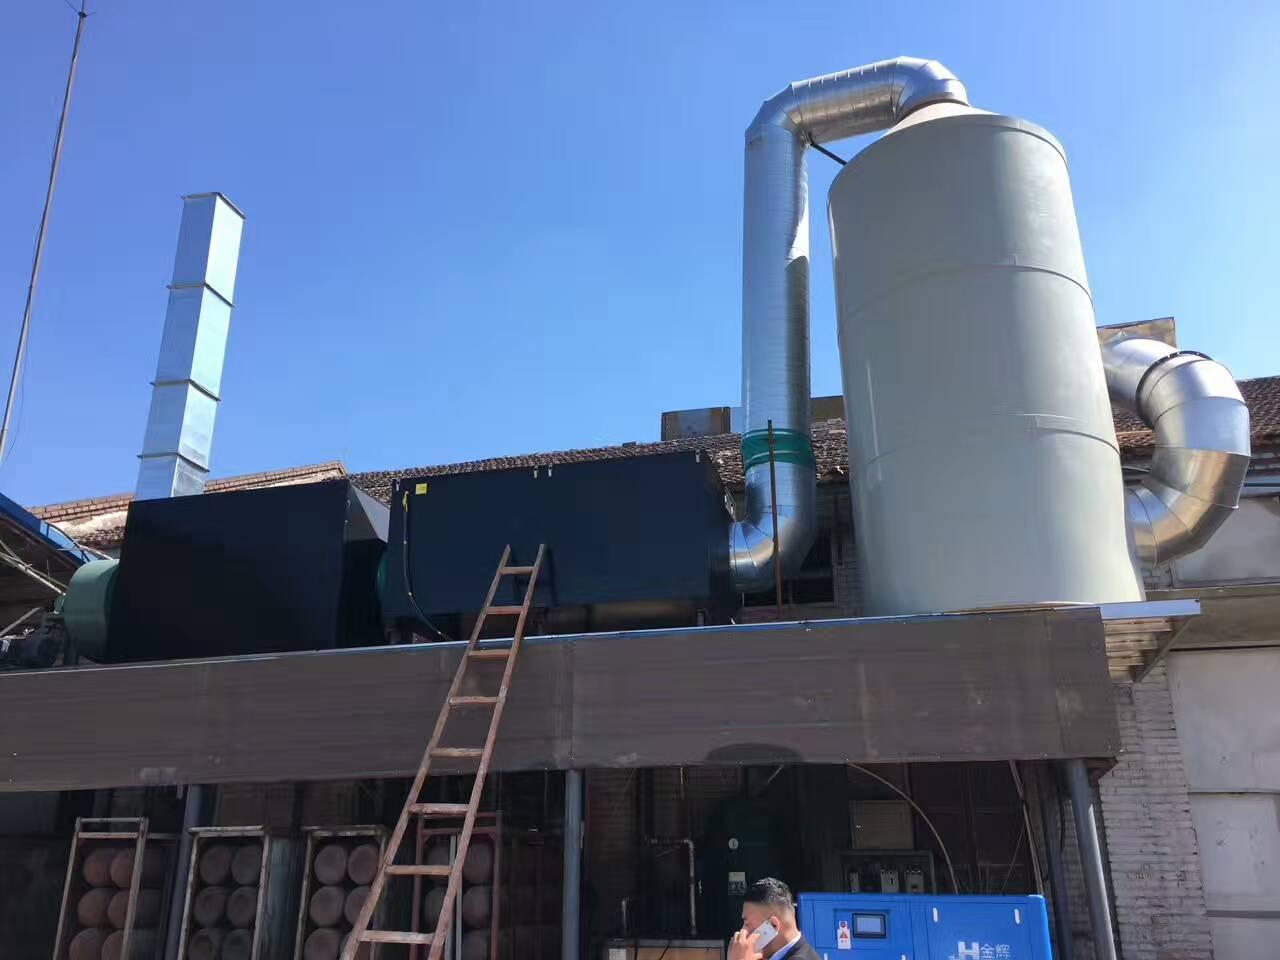 厂家直销 水喷淋塔净化器 工业污染废气净化设备 PP保证环评达标